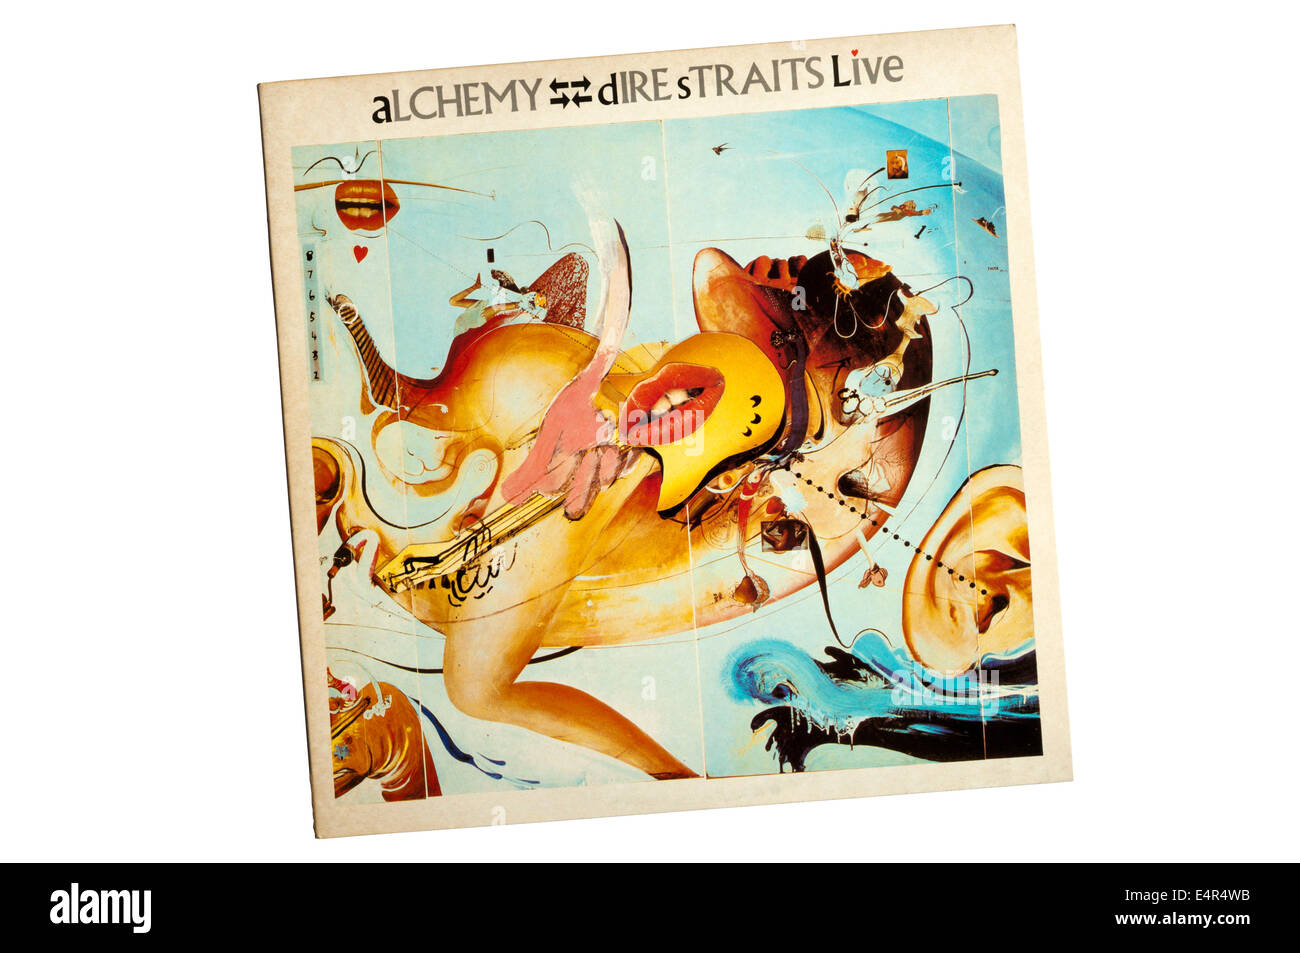 L'alchimie : Dire Straits Live est un double album du groupe de rock anglais Dire Straits, sorti en 1984. Leur premier album live. Banque D'Images